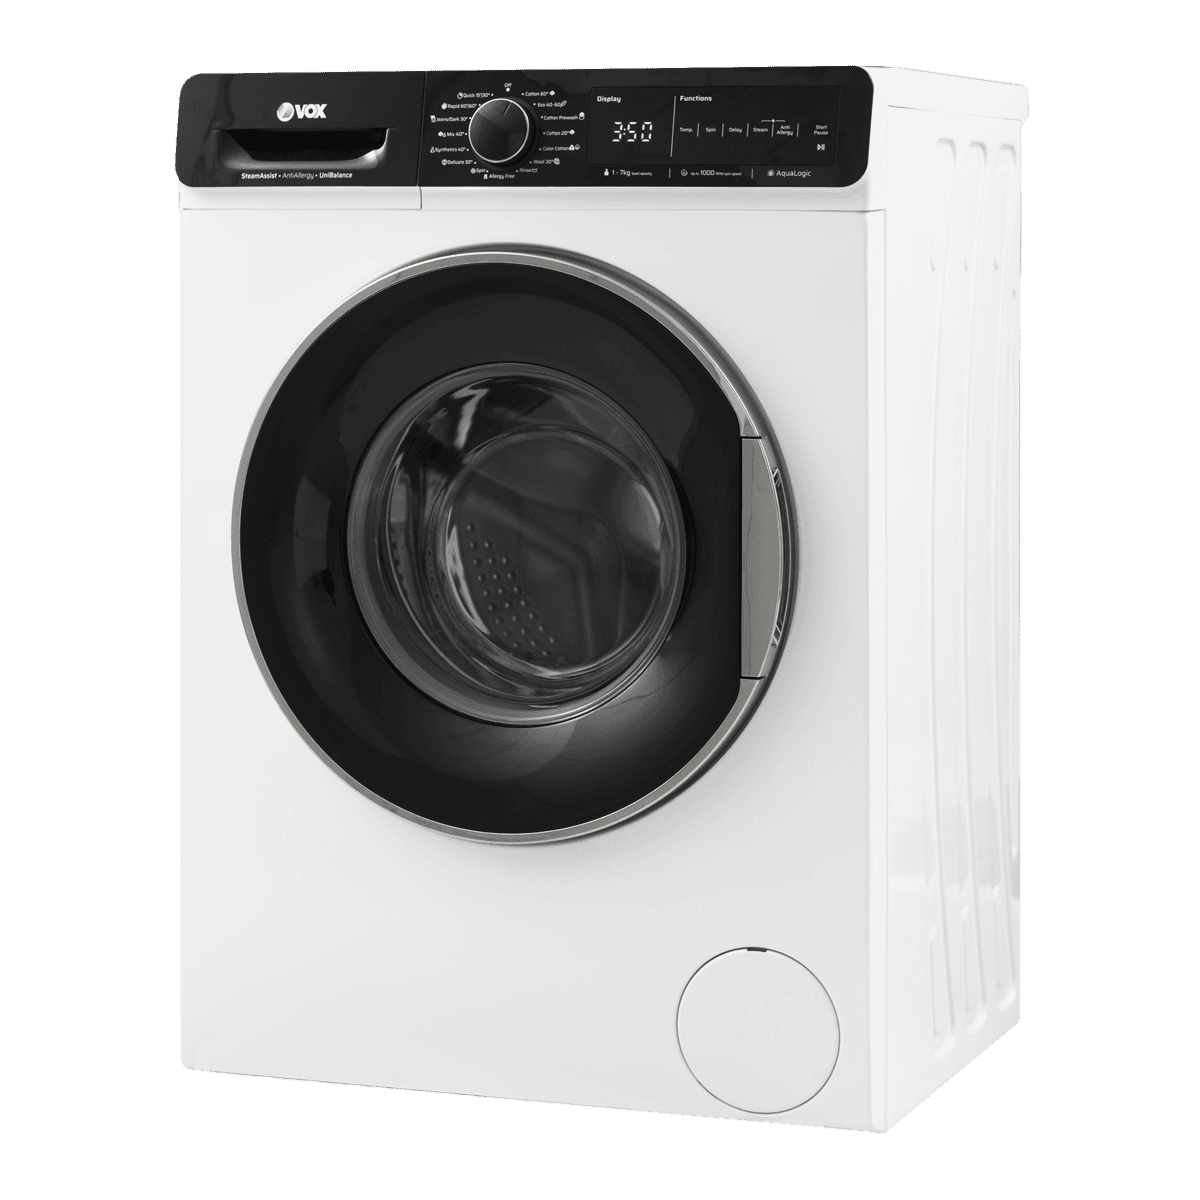 Selected image for VOX Mašina za pranje veša WM1070-SAT2T15D